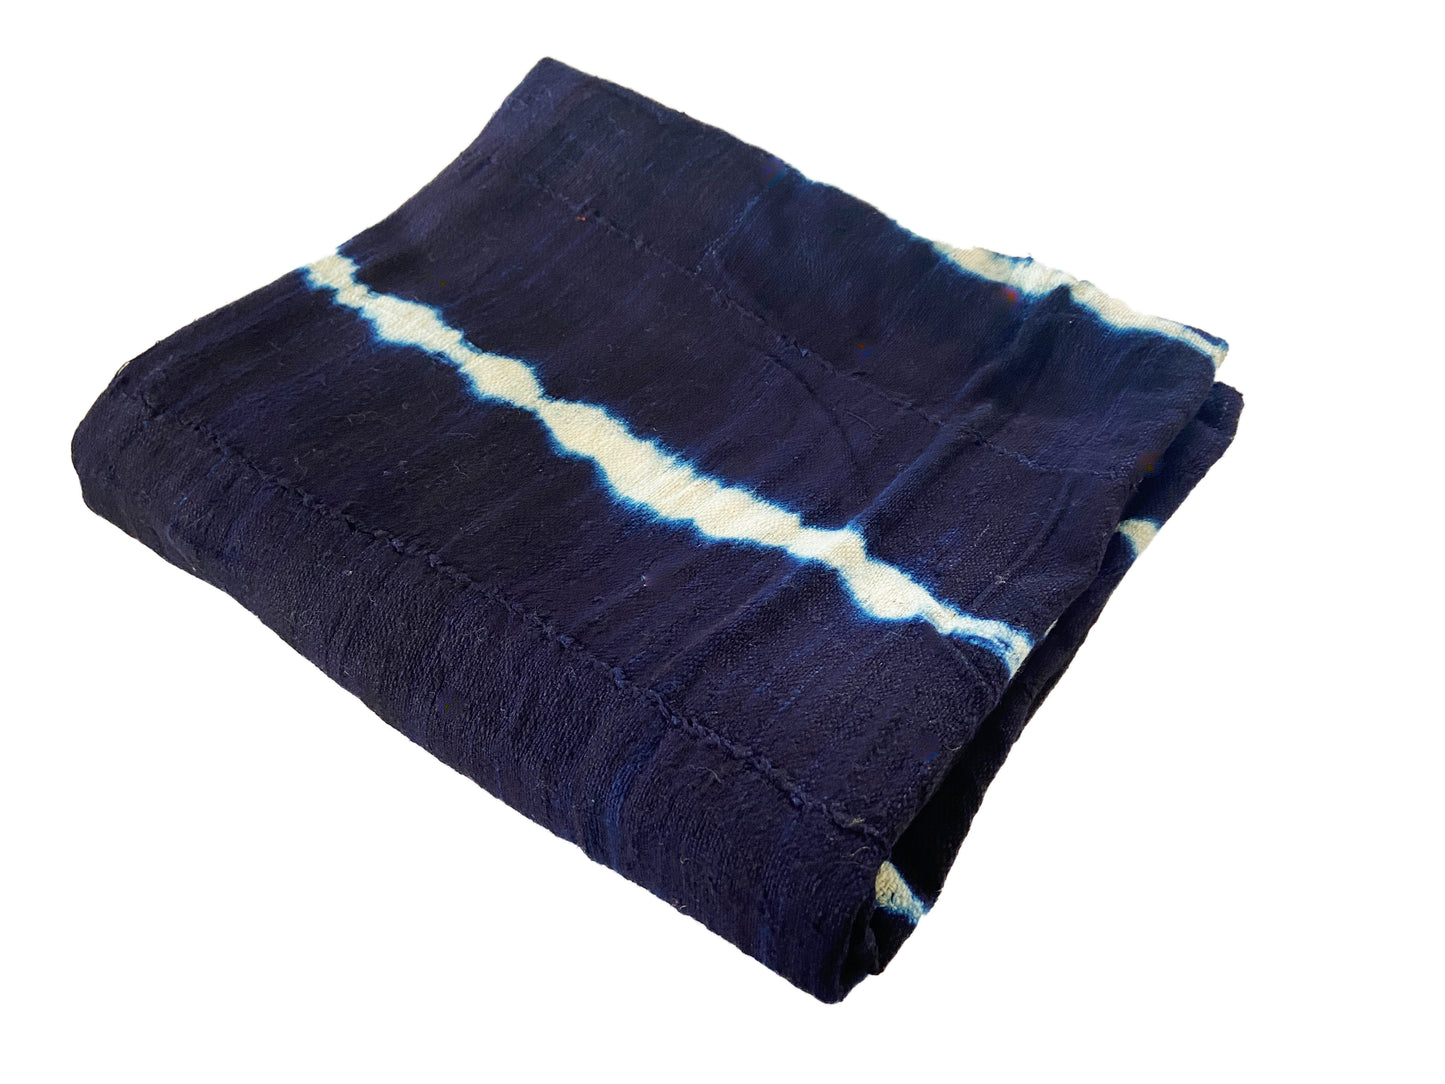 Fine Weaving Mali Indigo Mud Cloth Textile 47" by 60" #1026